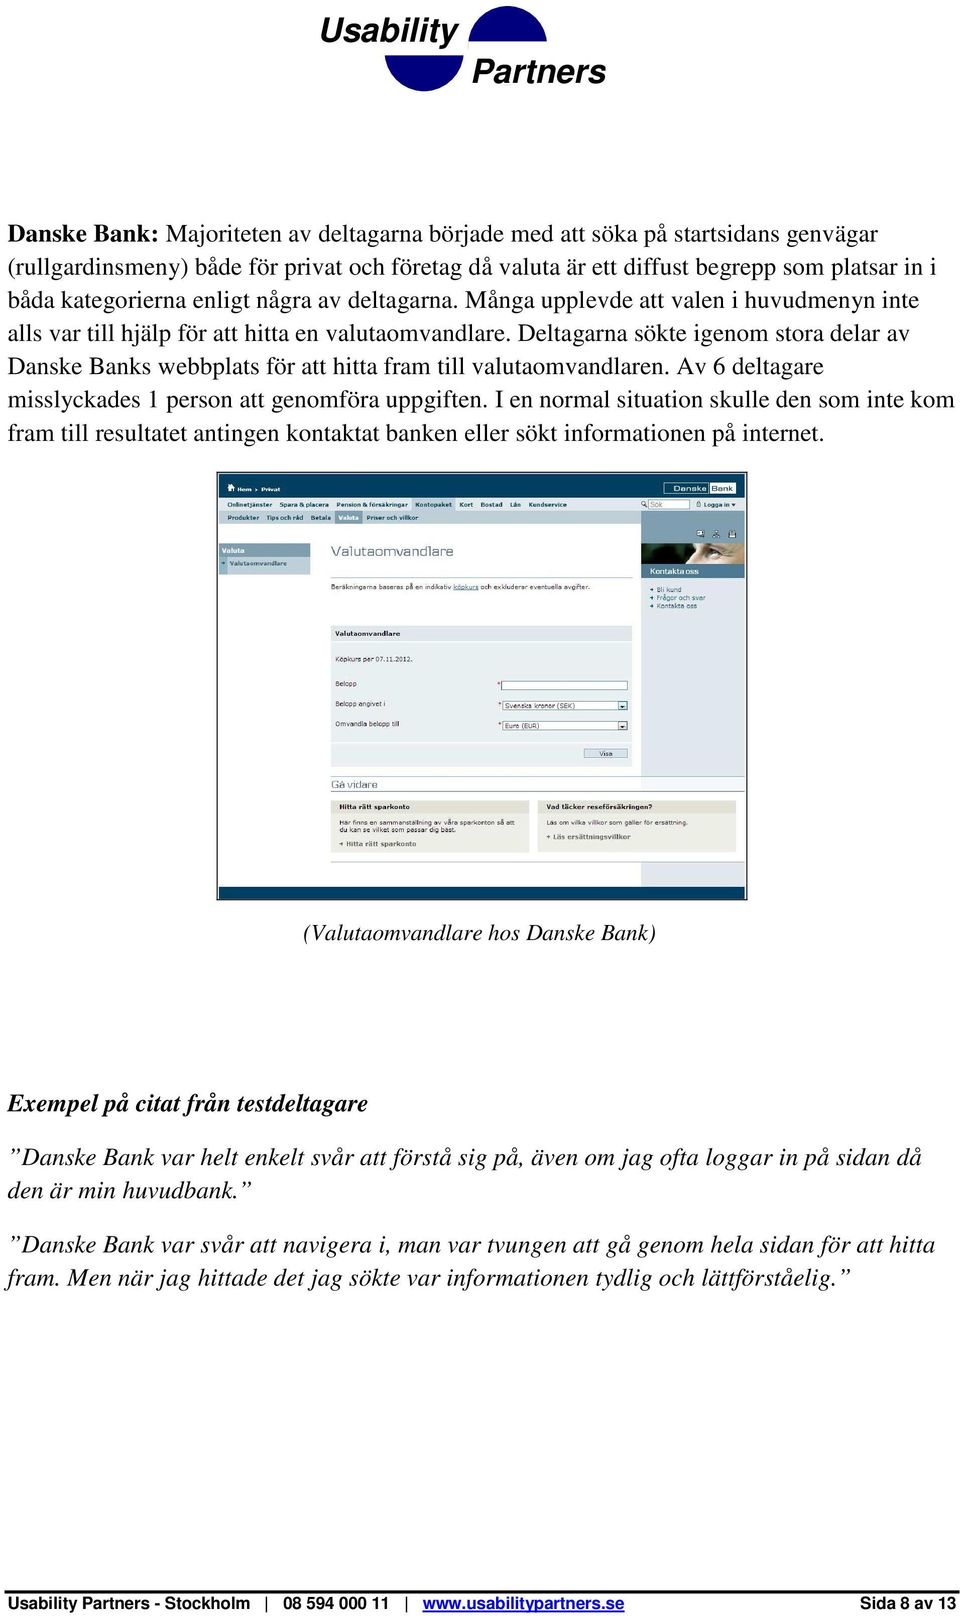 Deltagarna sökte igenom stora delar av Danske Banks webbplats för att hitta fram till valutaomvandlaren. Av 6 deltagare misslyckades 1 person att genomföra uppgiften.